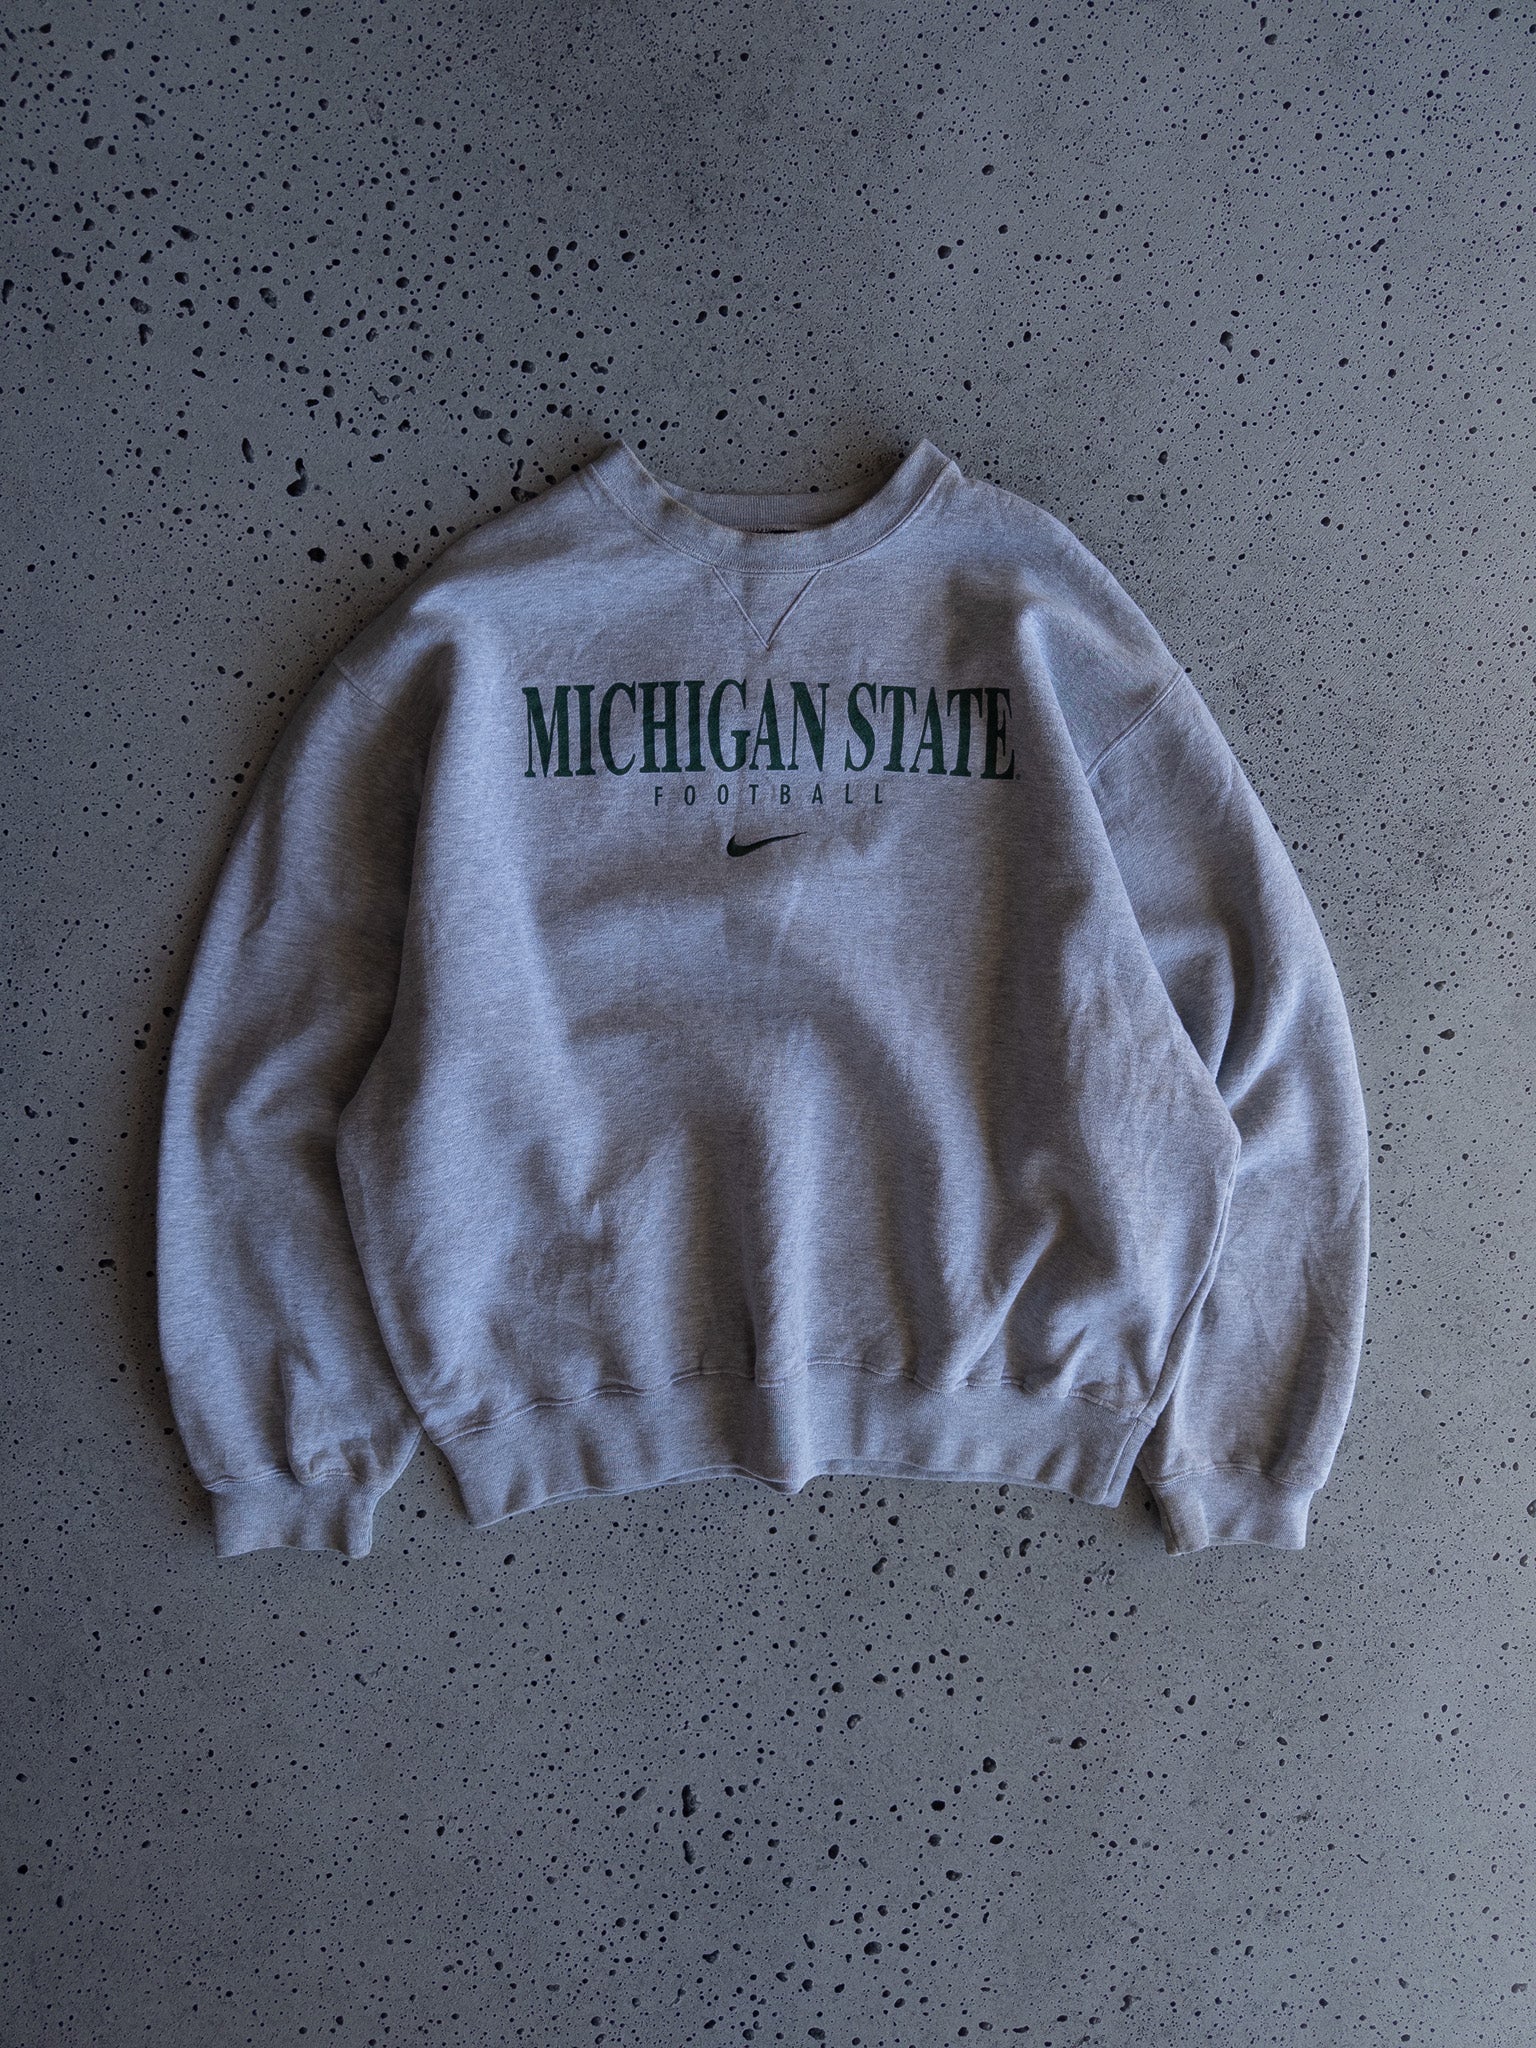 Vintage Michigan State Nike Sweatshirt (L)